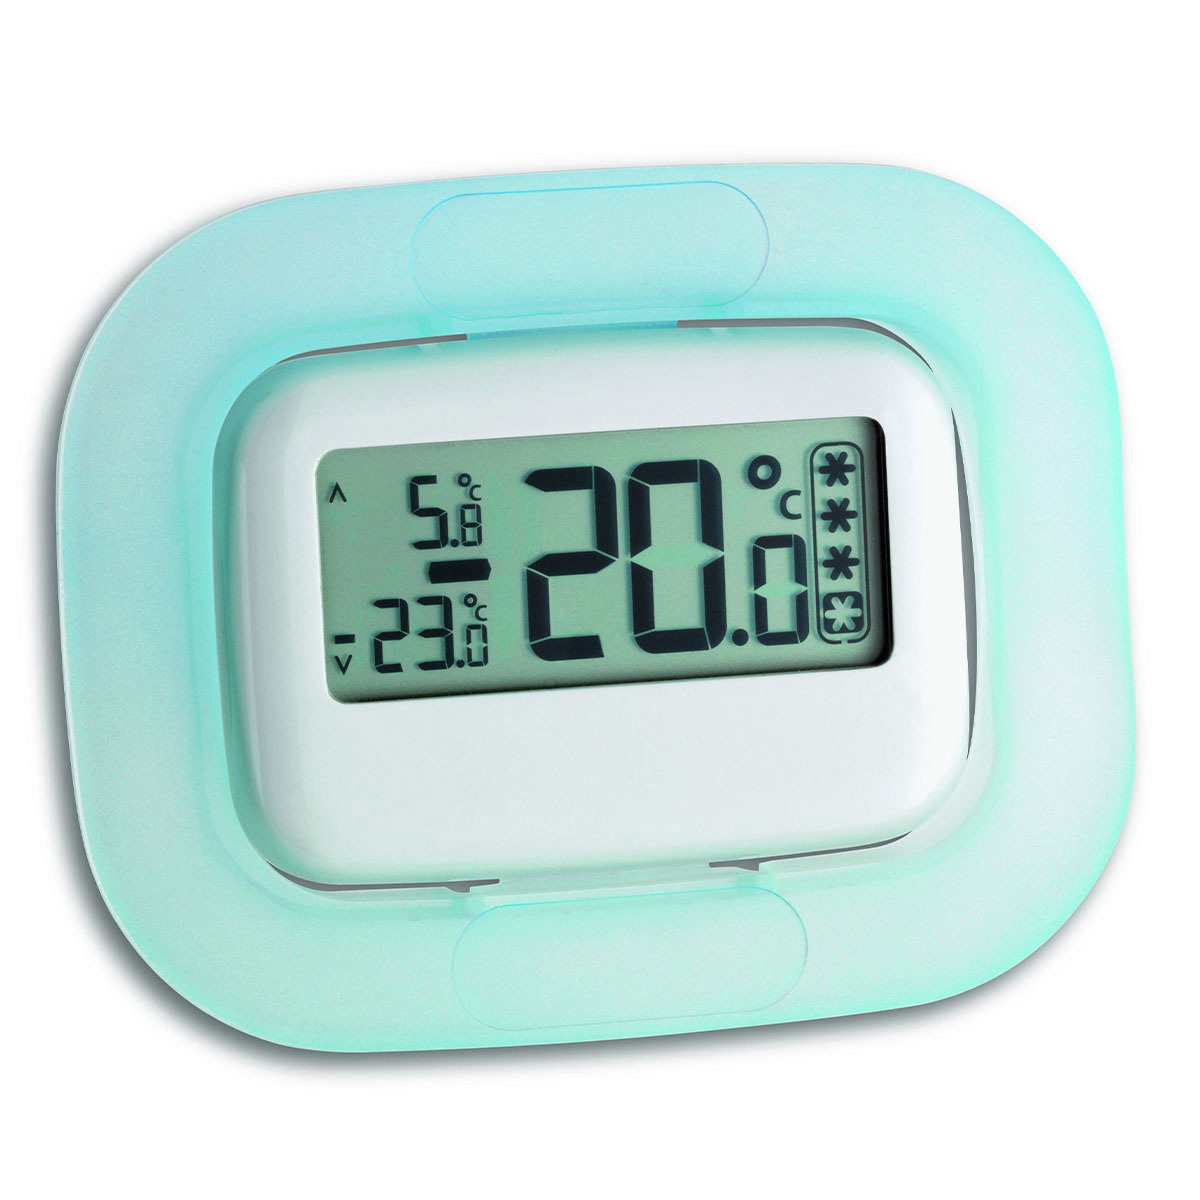 30-1042-digitales-kühl-gefrierschrank-thermometer-ansicht1-1200x1200px.jpg